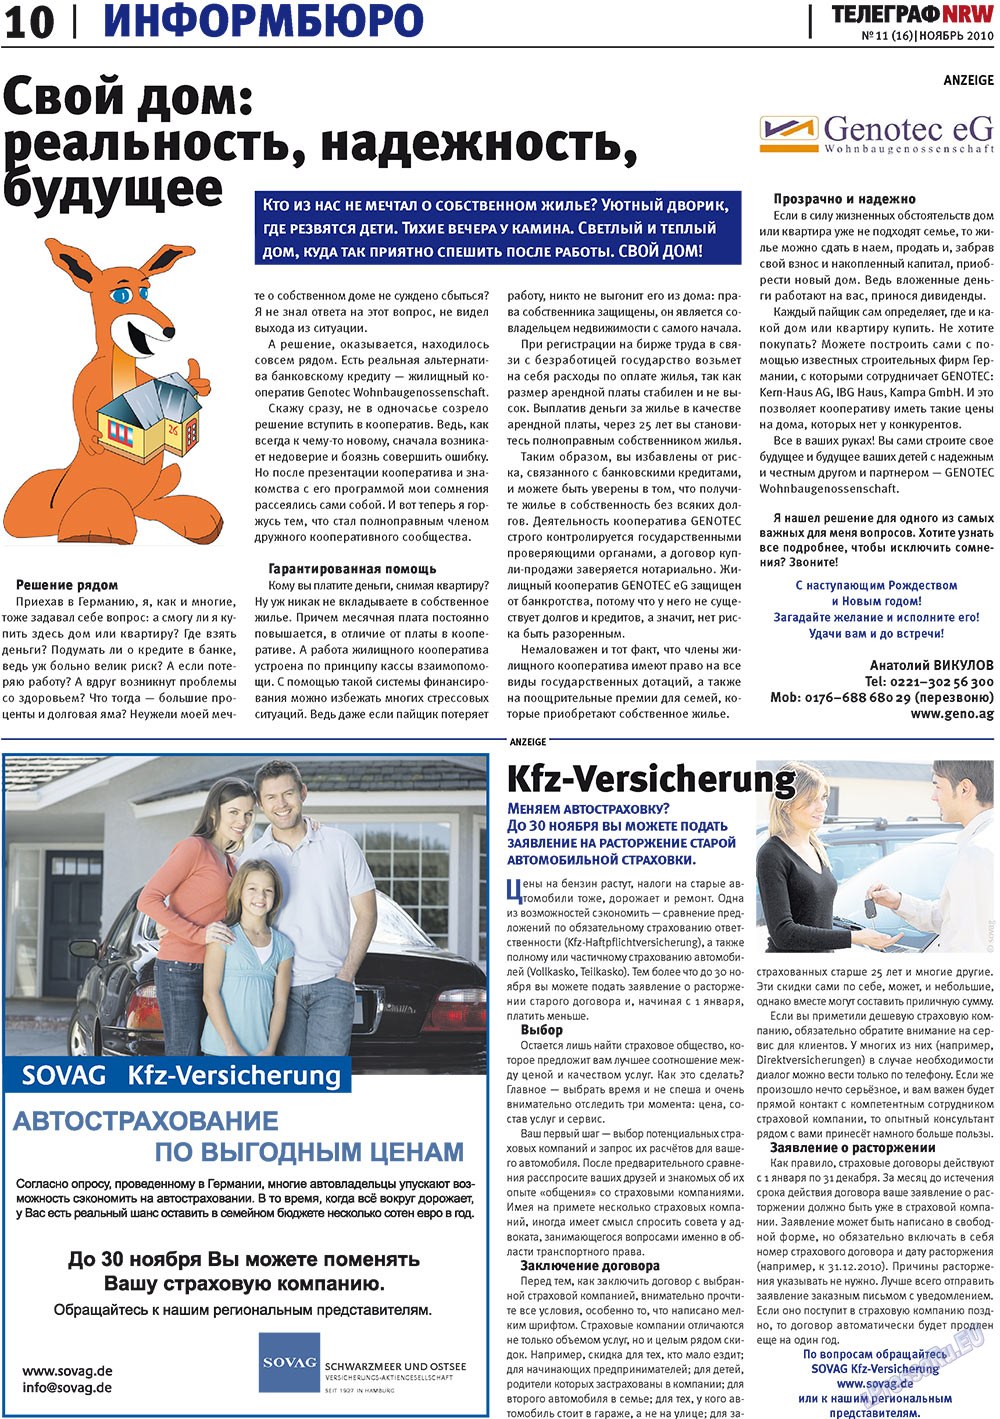 Телеграф NRW (газета). 2010 год, номер 11, стр. 10